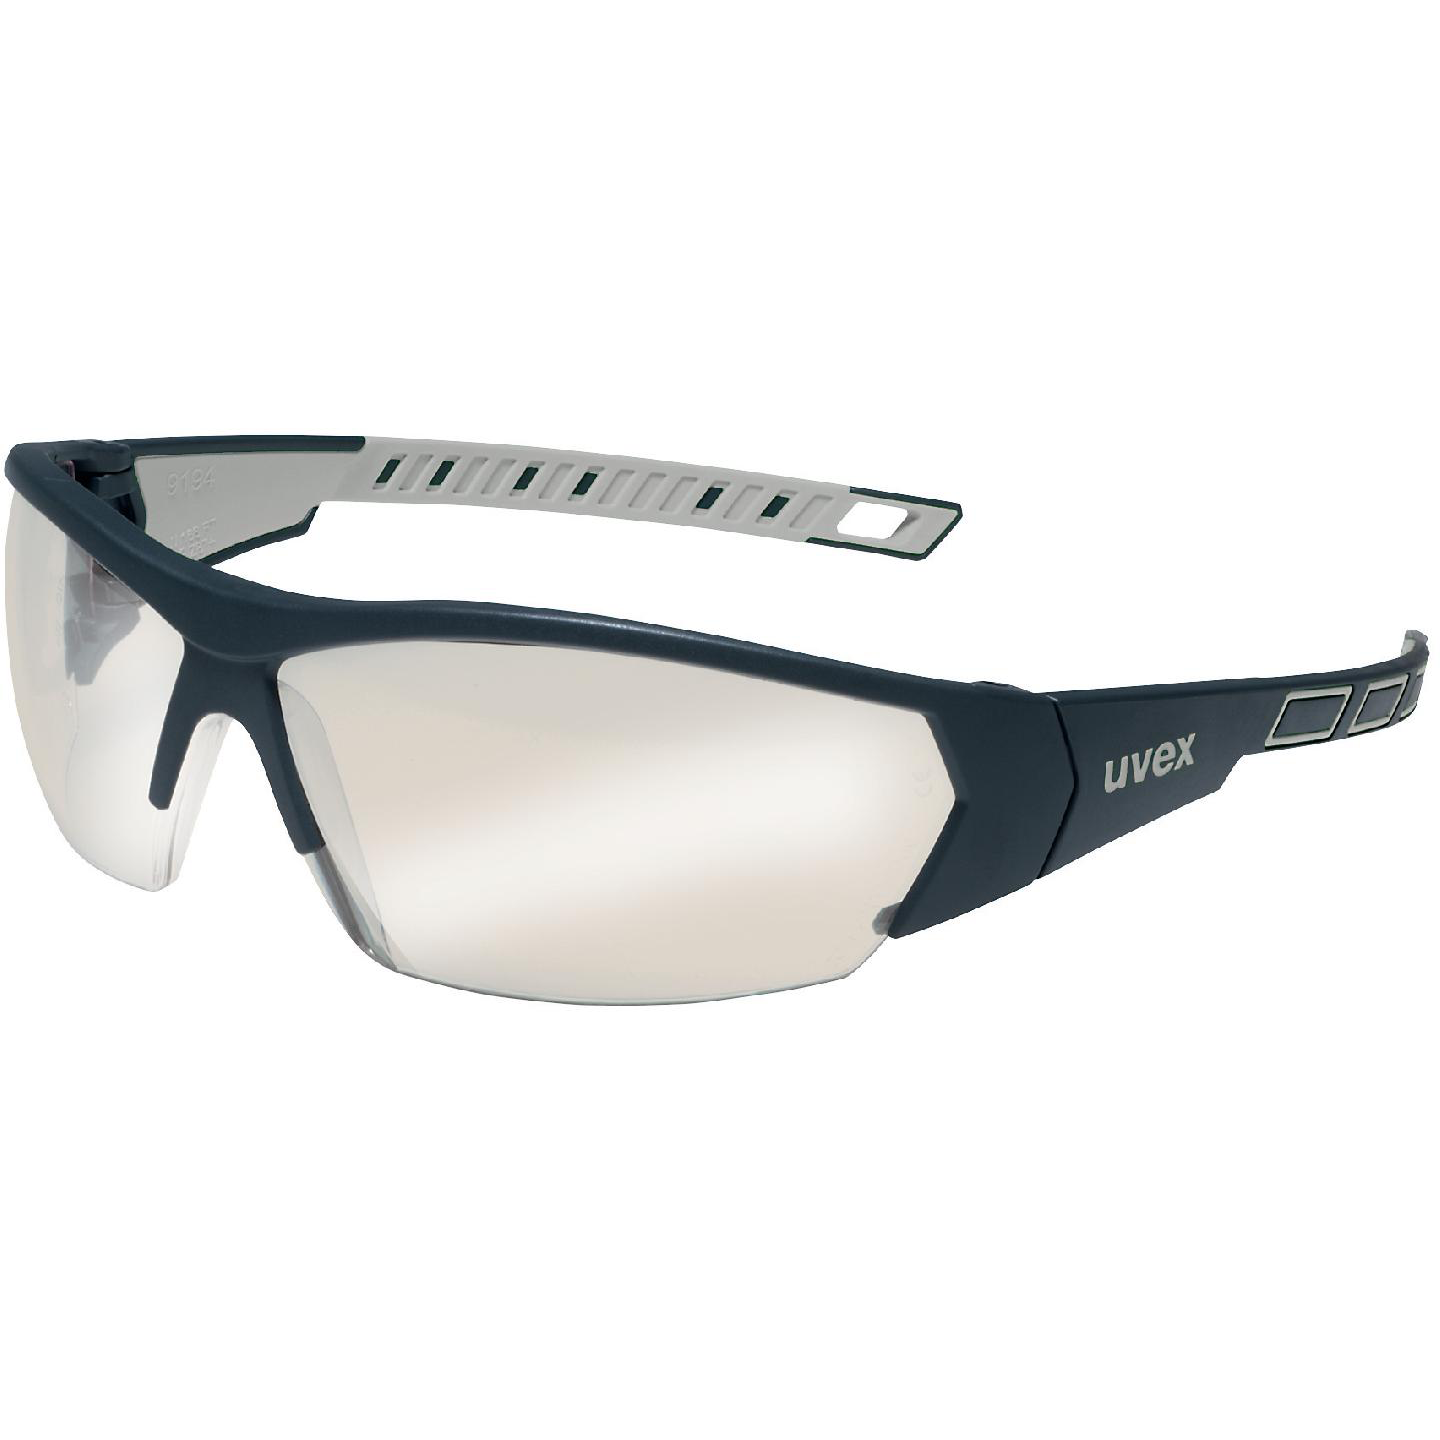 Schutzbrille Uvex i-works schwarz/grau, PC Silberspiegel grau